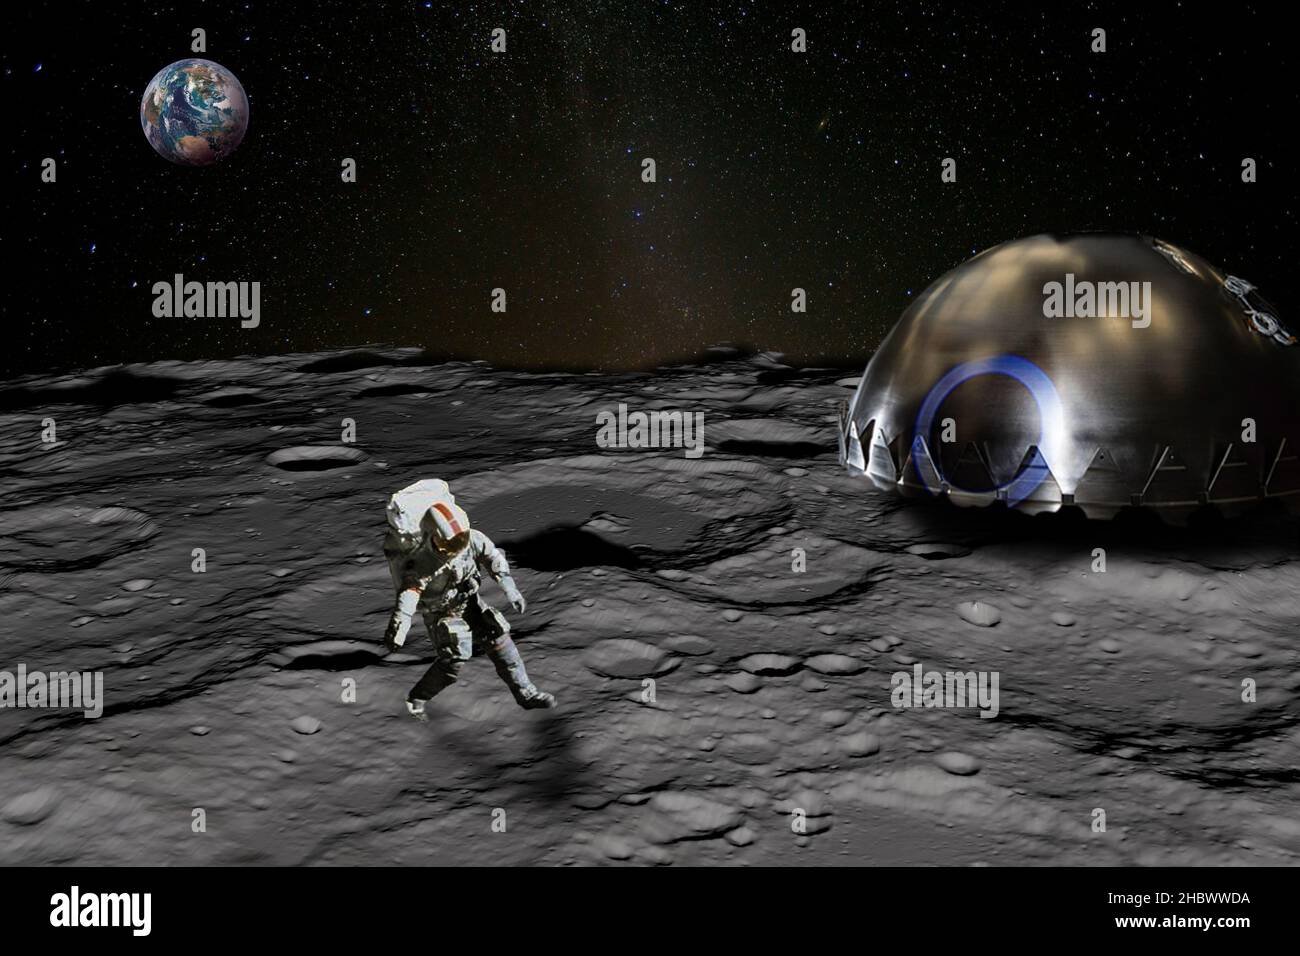 Astronaute sur la surface lunaire près de la base lunaire, la planète Terre s'élève au-dessus de l'horizon.Éléments de cette image fournis par la NASA. Banque D'Images